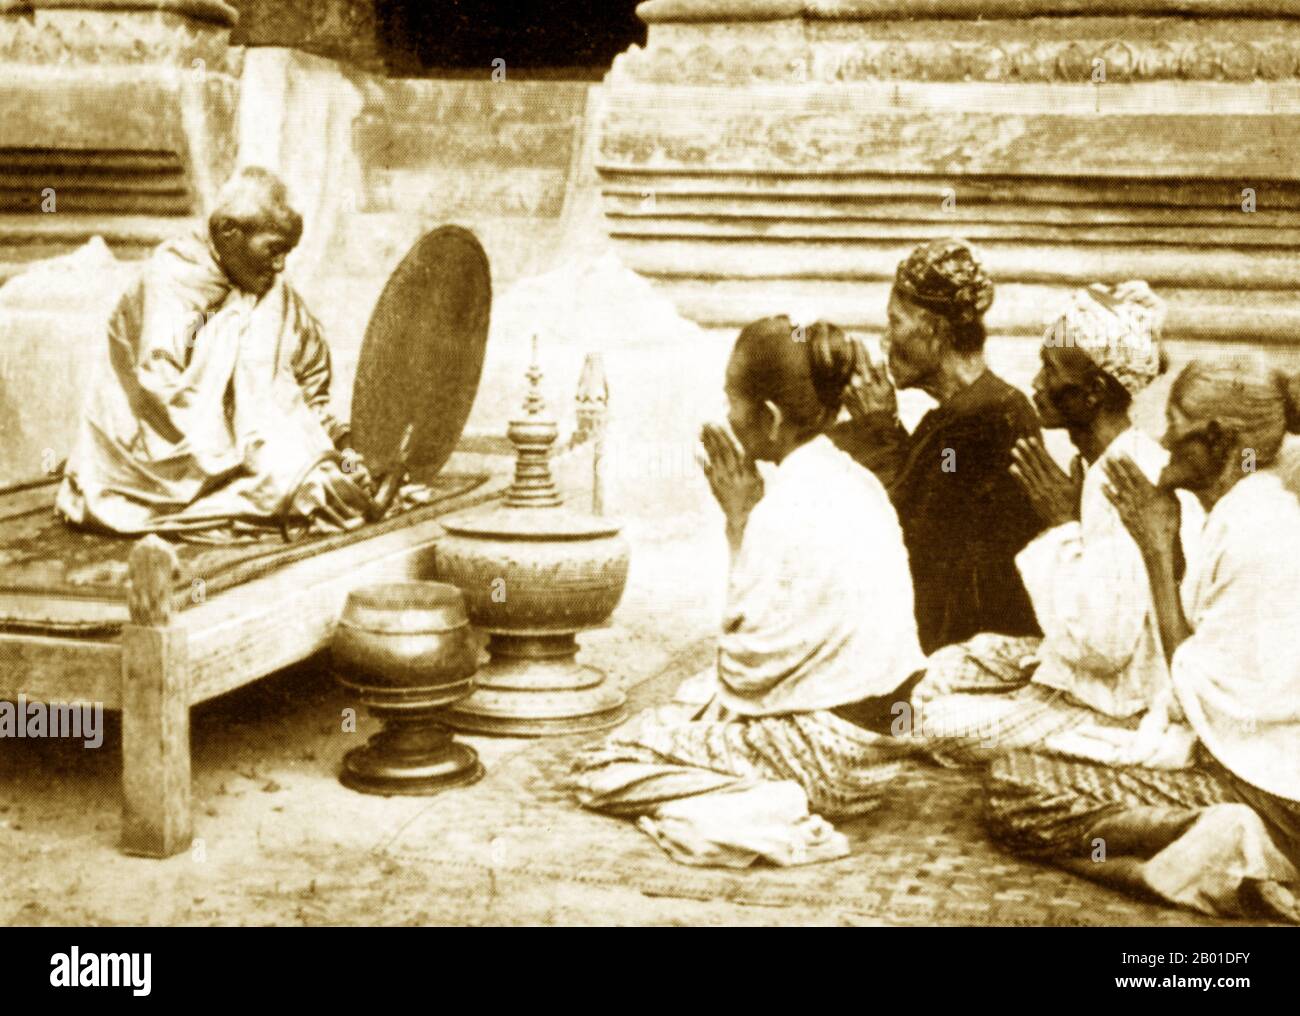 Birmanie: Un abbé bouddhiste (birman: 'Sayadaw') raconte les préceptes aux fidèles, vers 1892-1896. Les moines bouddhistes collectent des almes - la nourriture préparée par des dévotés et des laïcs qui font du mérite en les faisant don - chaque matin en Birmanie et dans la plupart des pays bouddhistes Theravada. C'est leur seule nourriture pour la journée. Les moines ne mangent pas après 12 heures. La légende attribue la première doctrine bouddhiste en Birmanie à 228 av. J.-C. lorsque Sonna et Uttara, deux ambassadeurs de l'empereur Ashoka le Grand de l'Inde, sont venus au pays avec des textes sacrés. Cependant, l'ère d'or du bouddhisme a vraiment commencé au 11th siècle. Banque D'Images